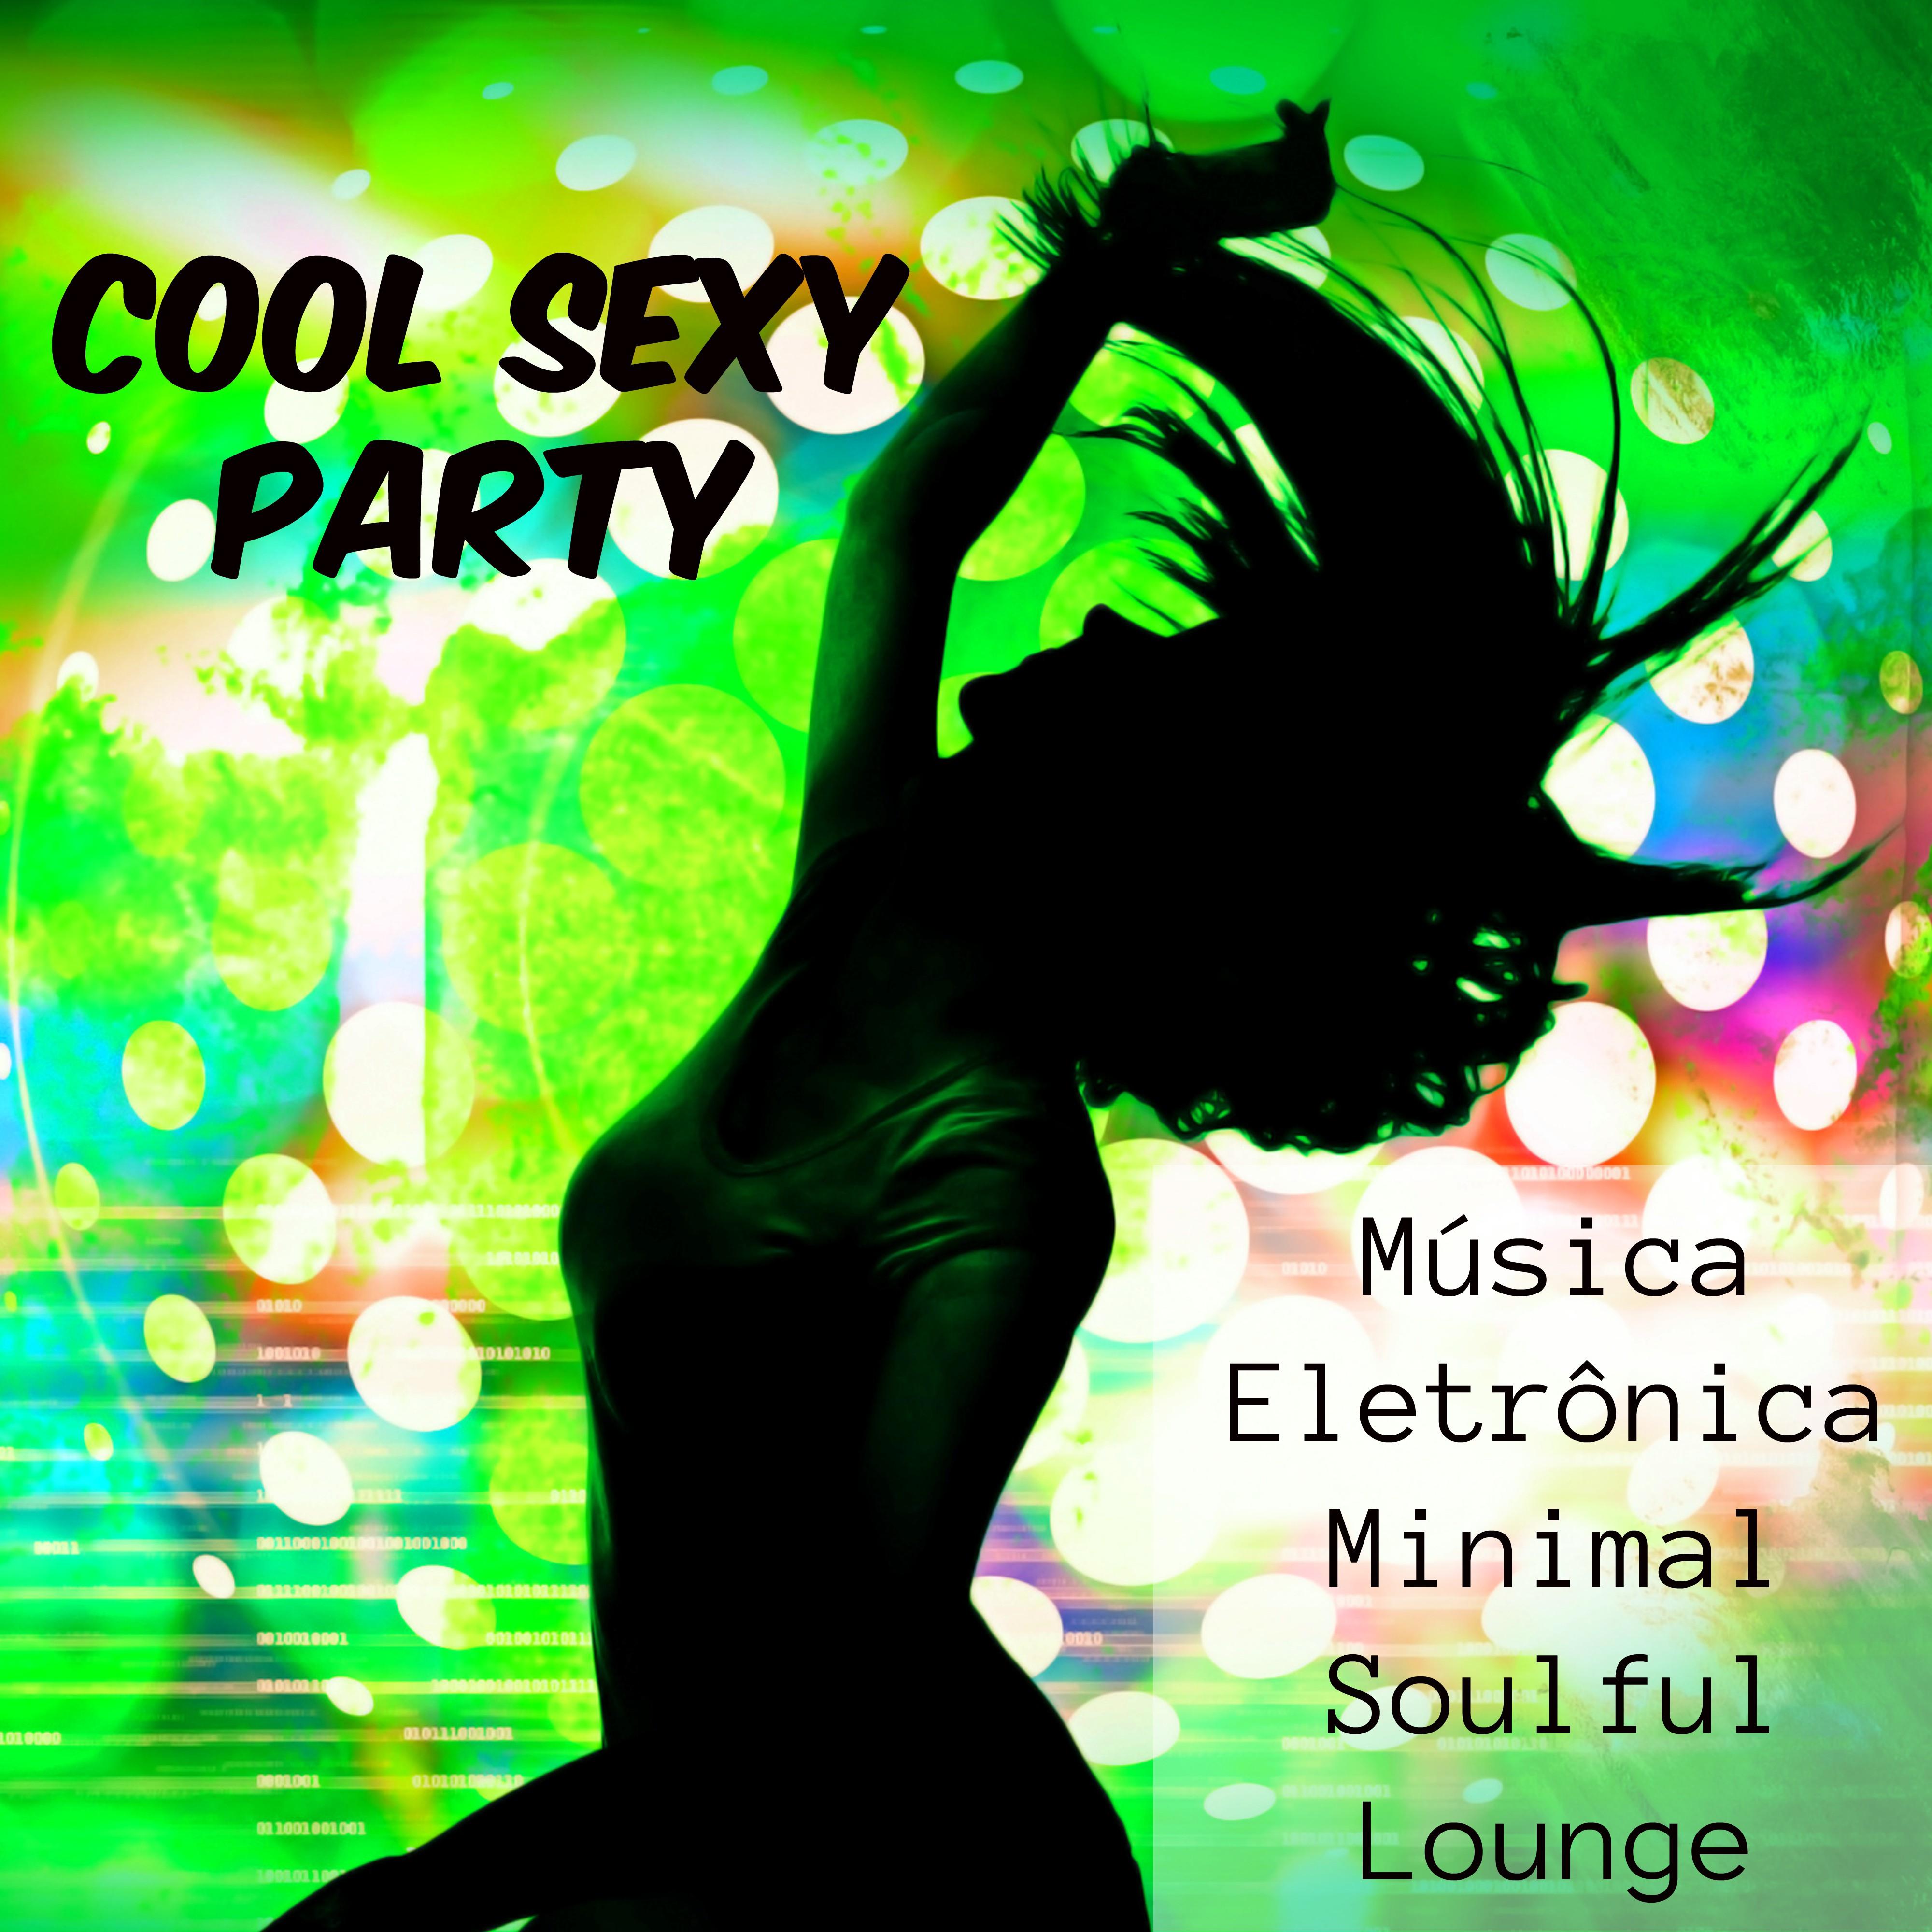 Cool  Party  Mu sica Eletr nica Minimal Soulful Lounge para Treinamento Funcional e Festa em Casa